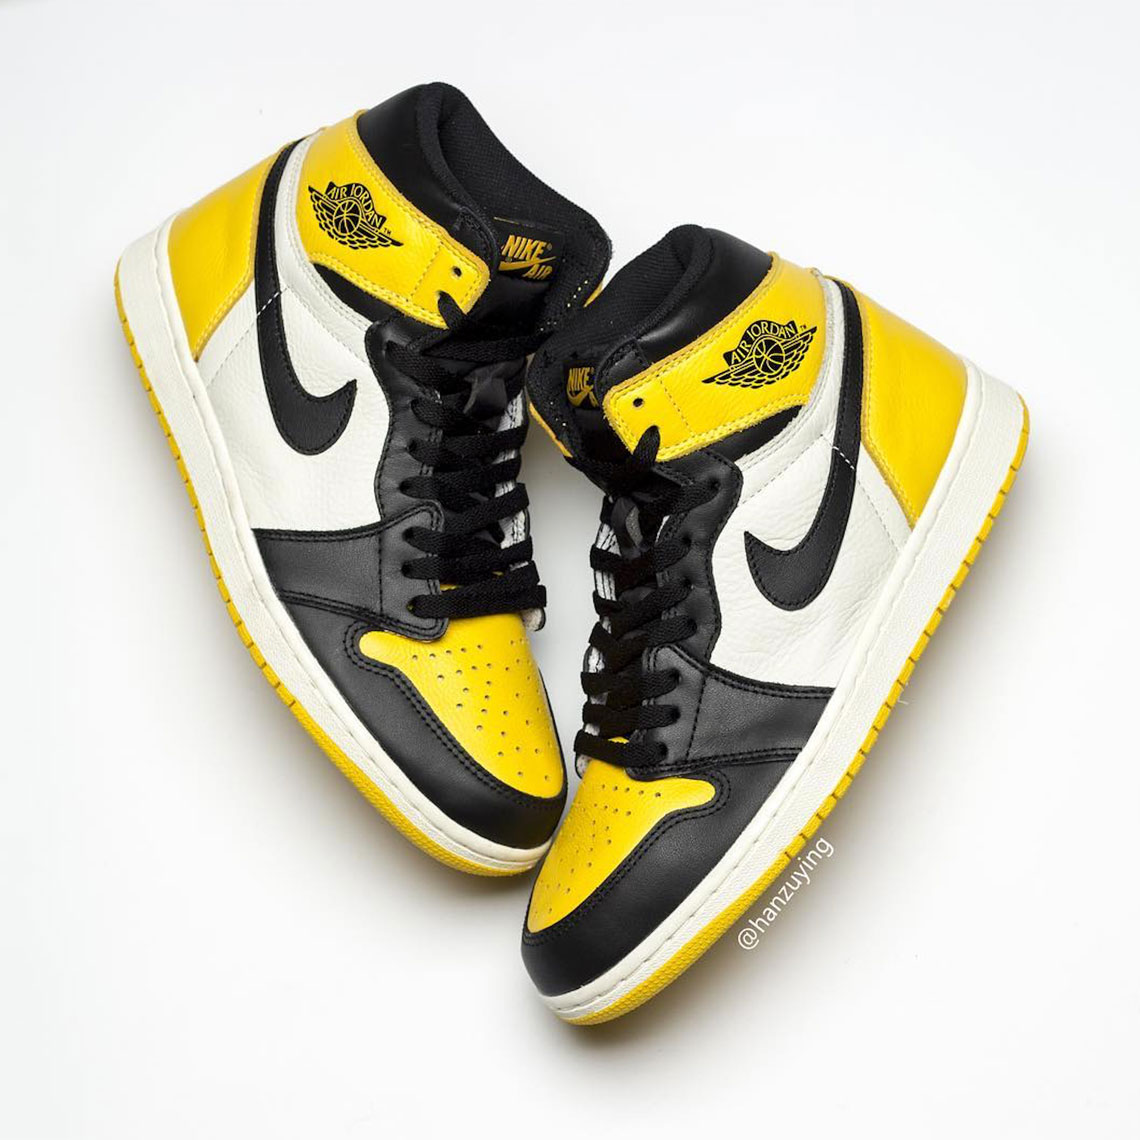 Air Jordan 1 Yellow Toe Ar1020 700 9